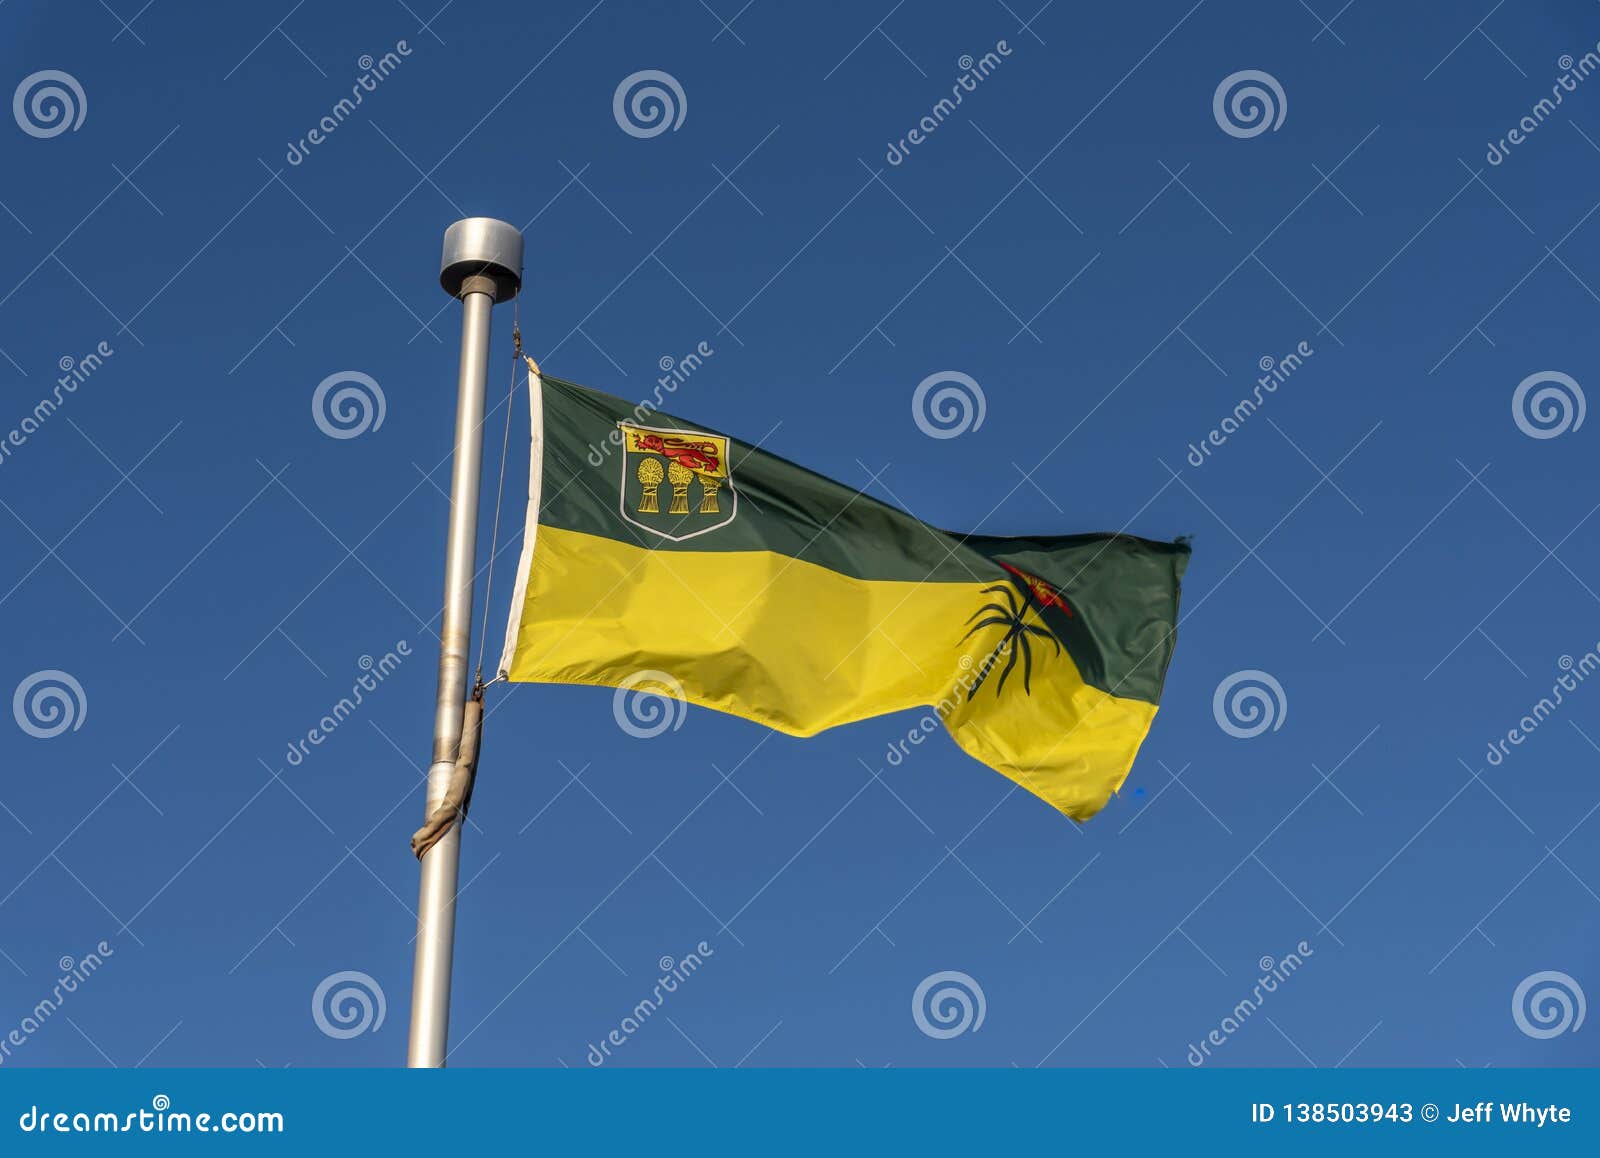 saskatchewan flag against blue sky